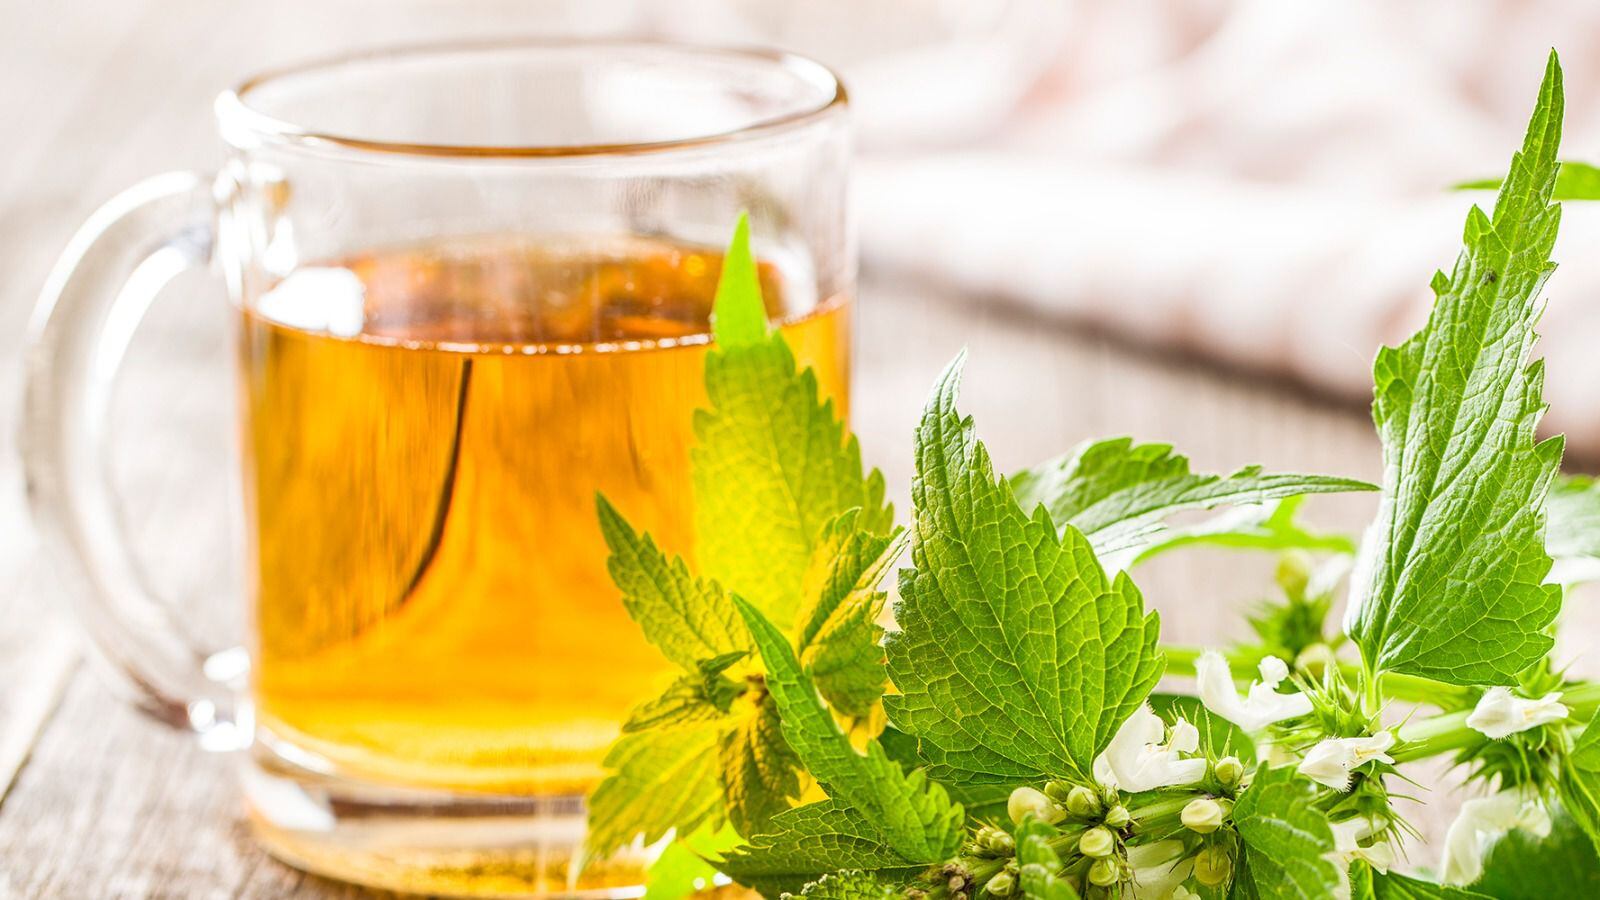 El té de ortiga verde ayuda a mantener sanos los riñones. (Foto: Shutterstock).